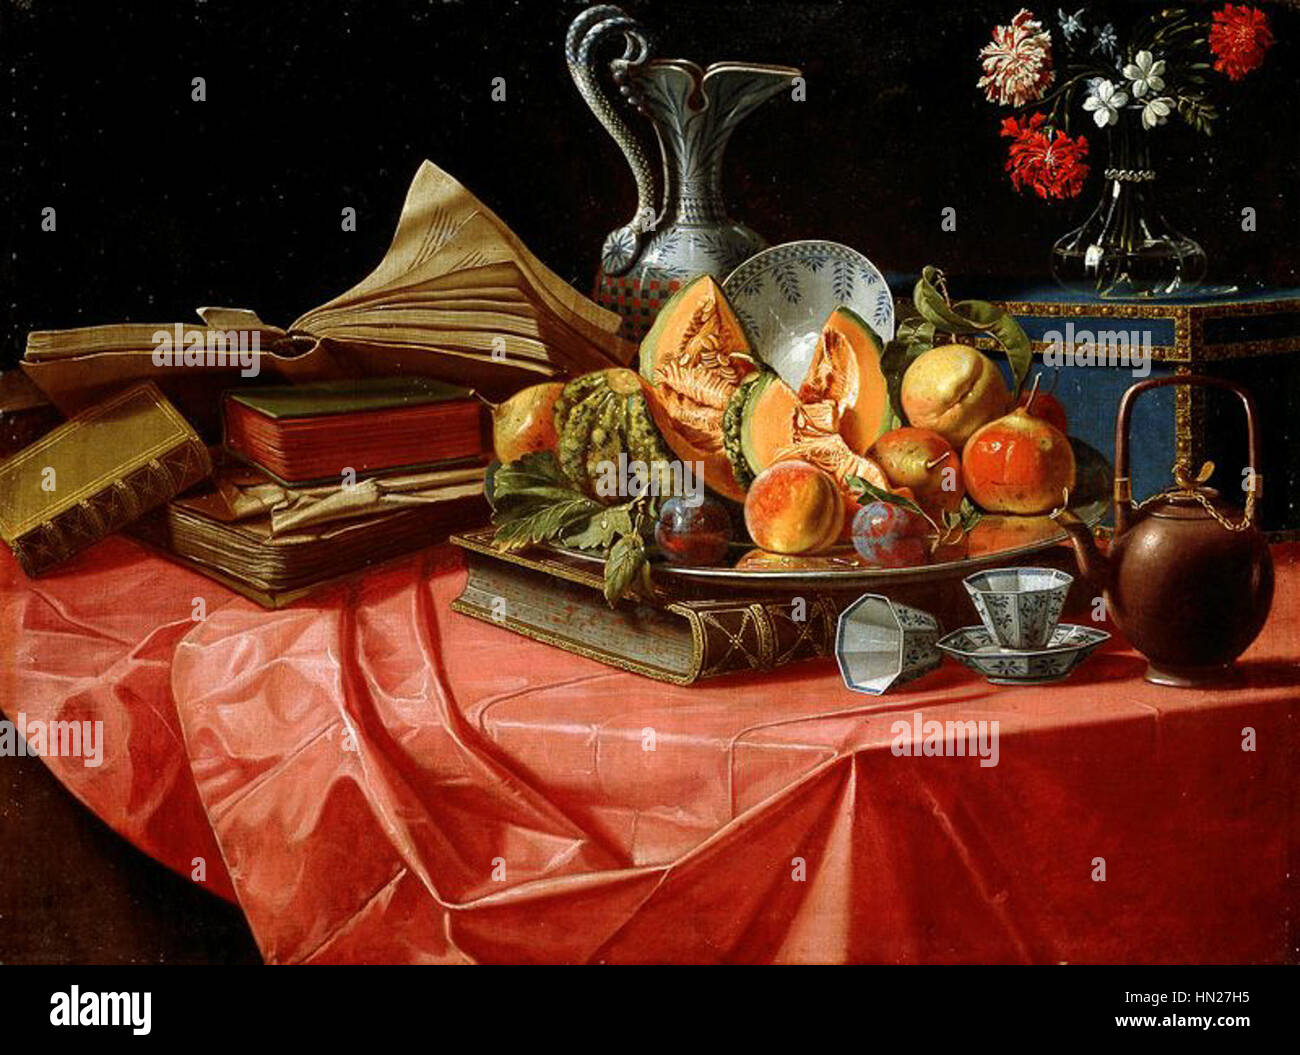 Cristoforo Munari, - Libri, porcellane, cinesi vassoio di frutta, bauletto, vasetto di Fiori e su teiera tavolo coperto da tovaglia rossa Banque D'Images